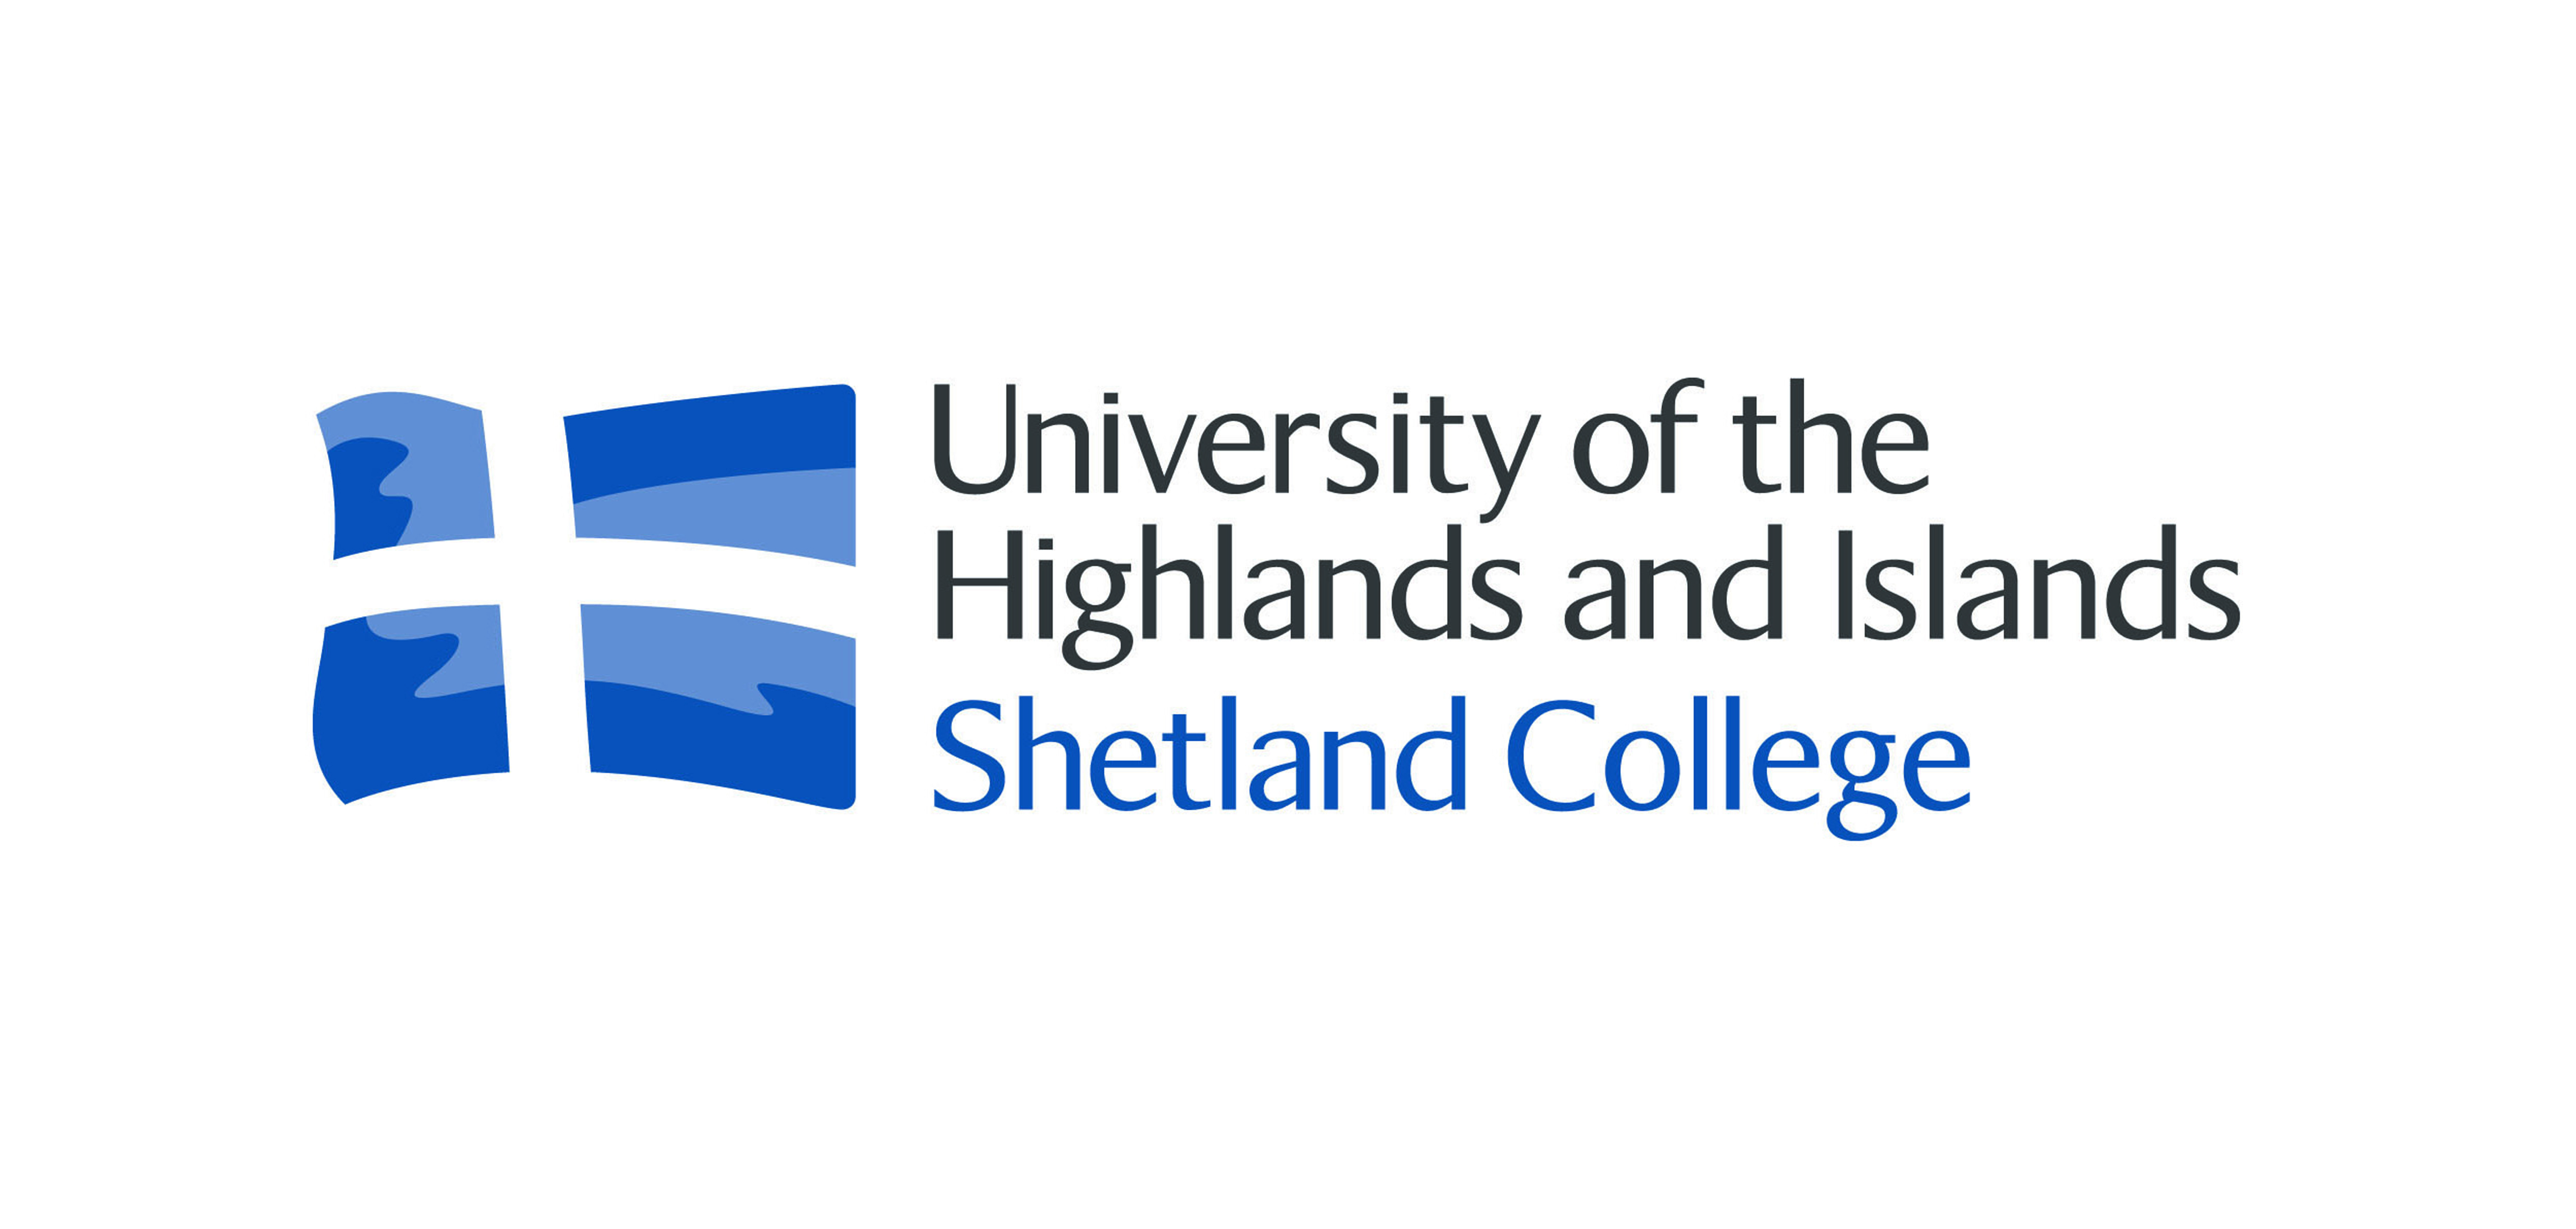 Visit Shetland College website